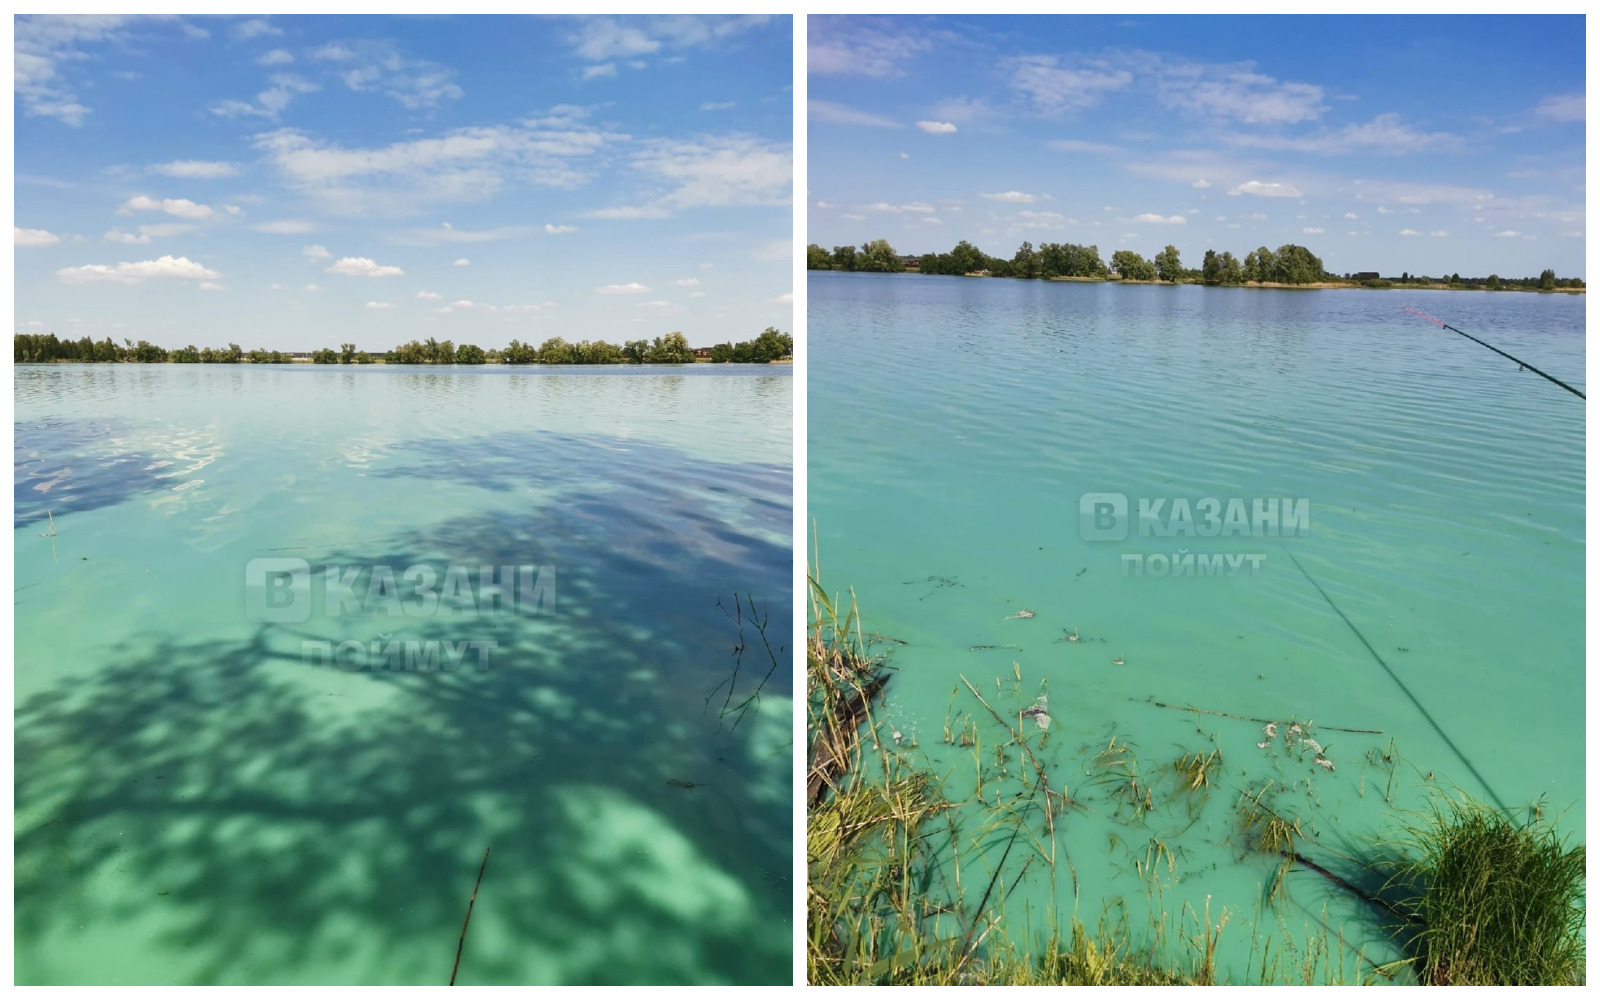 Чистое озеро Лаишевский район